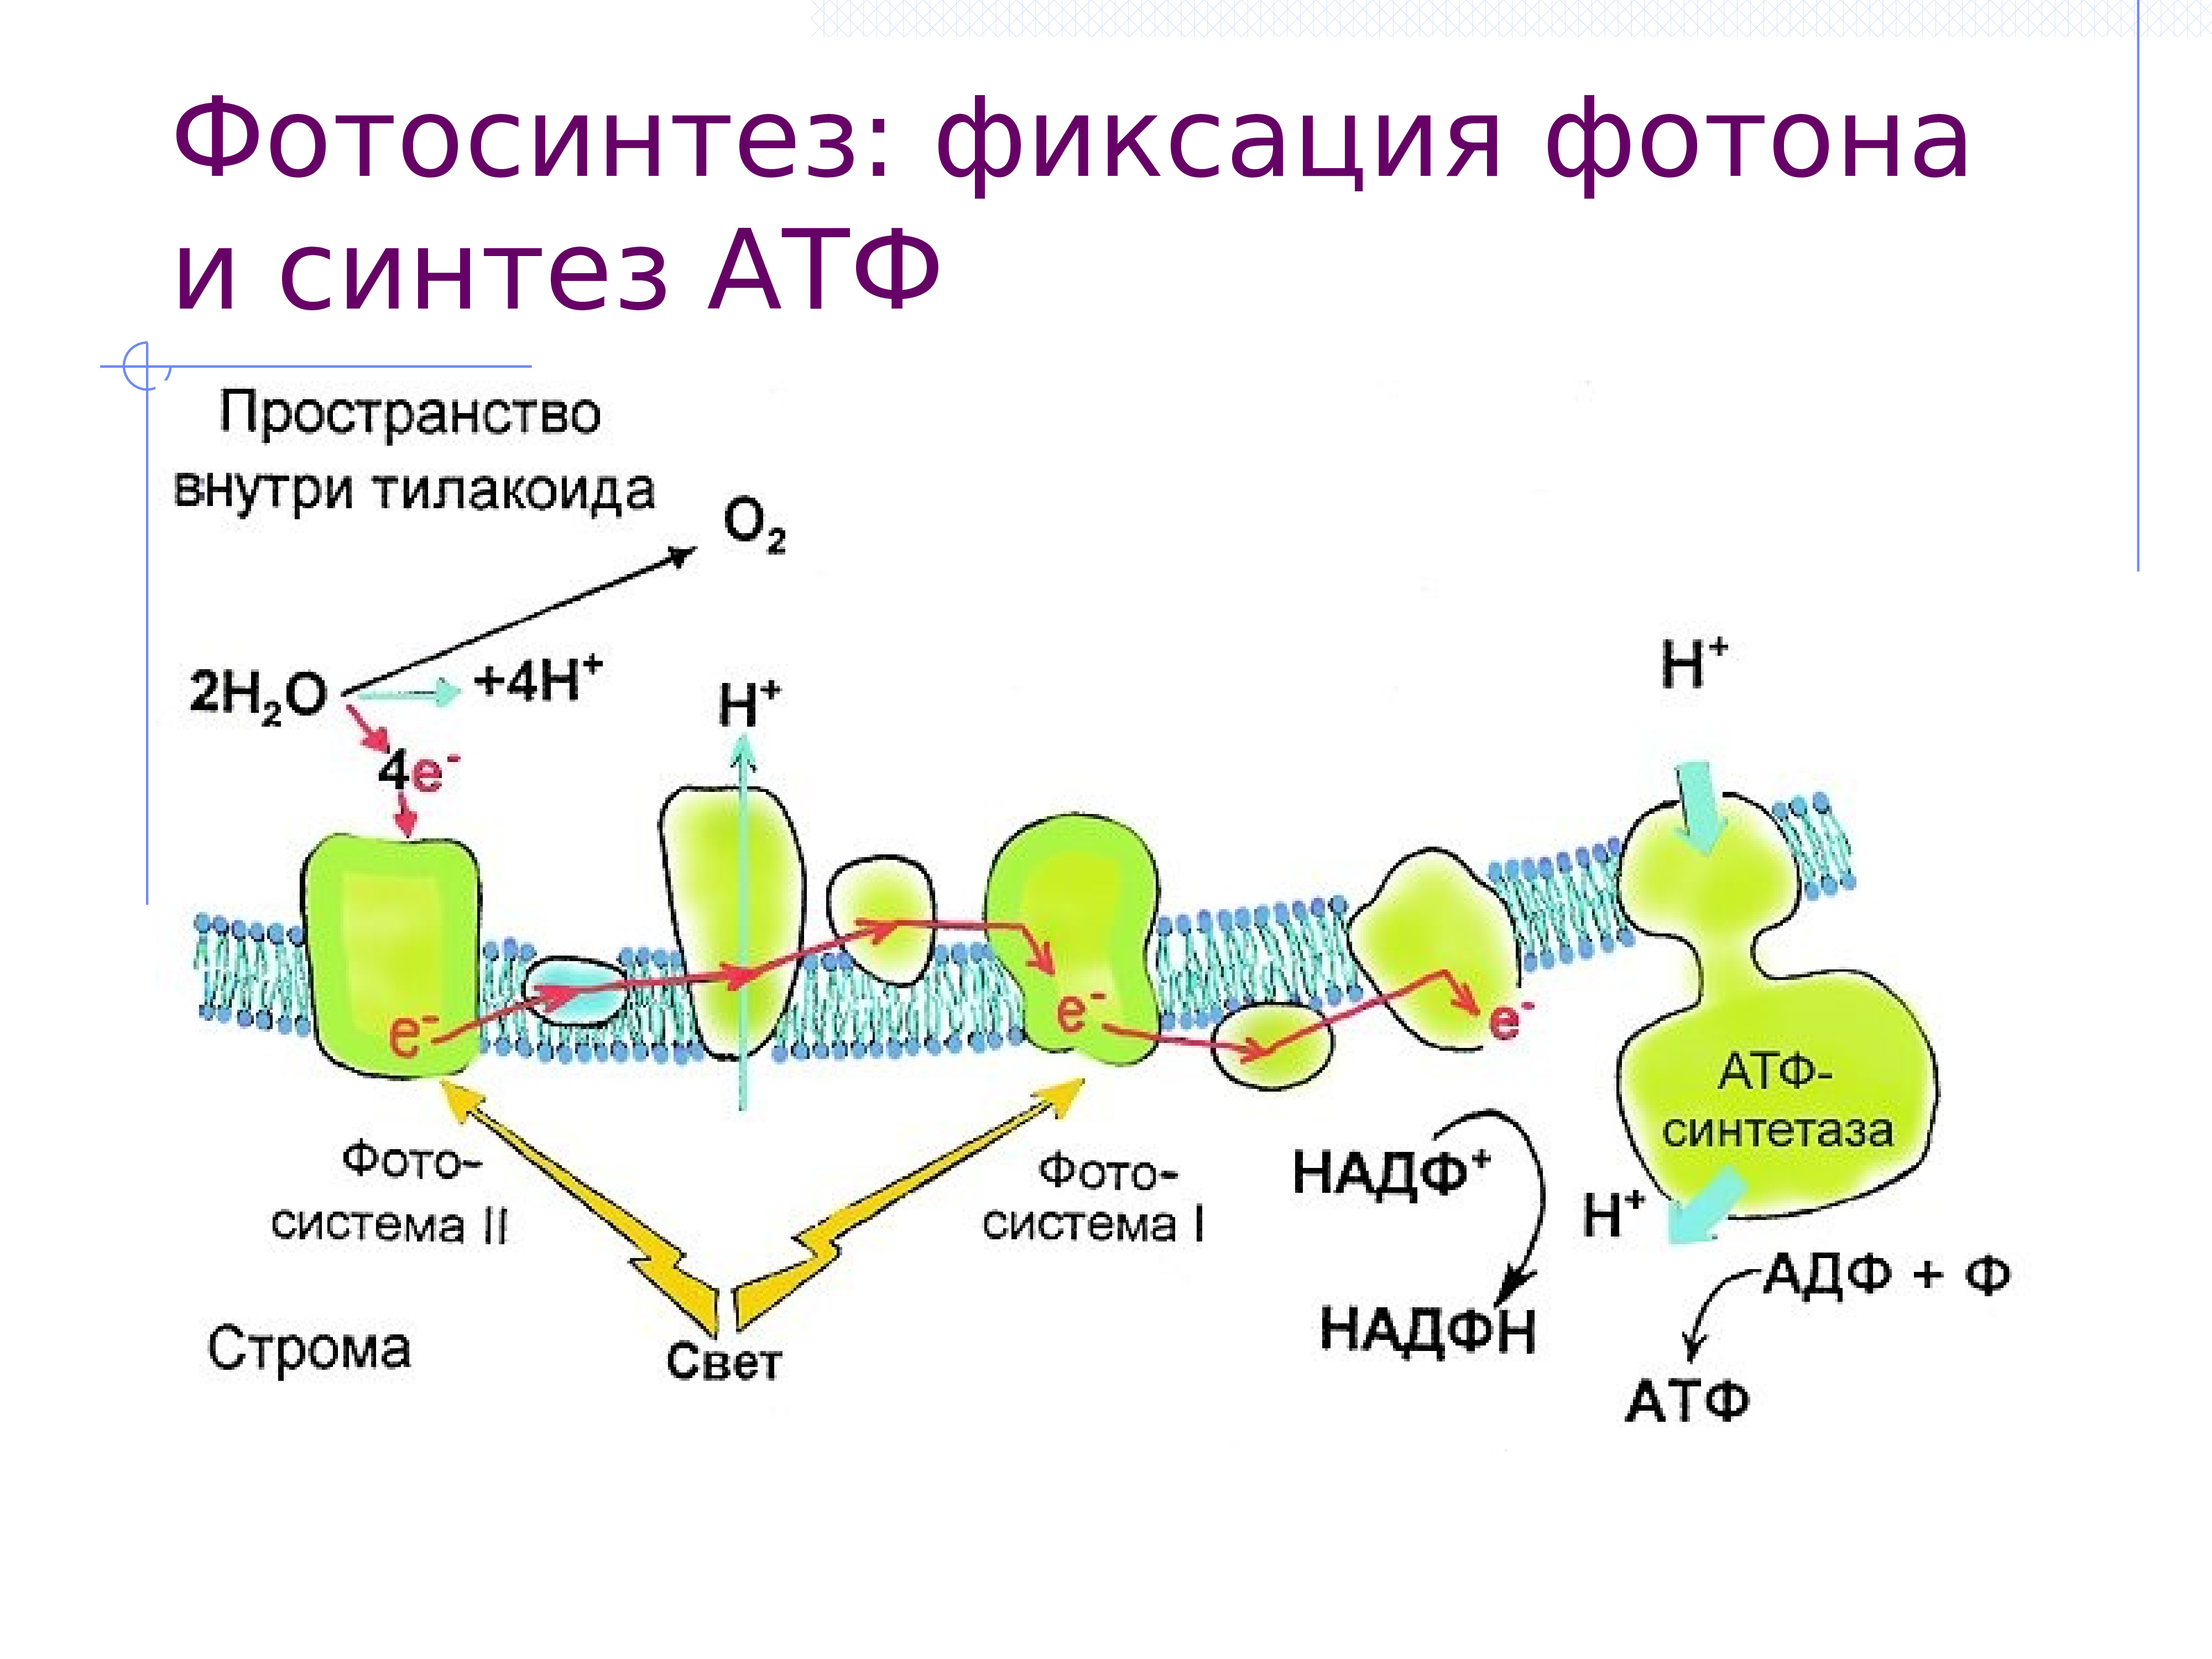 Фотосистема 1 фотолиз. АТФ синтетаза фотосинтез. Схема фотолиза воды при фотосинтезе. Фотосинтез схема на мембране. Фотолиз воды в хлоропласте происходит в